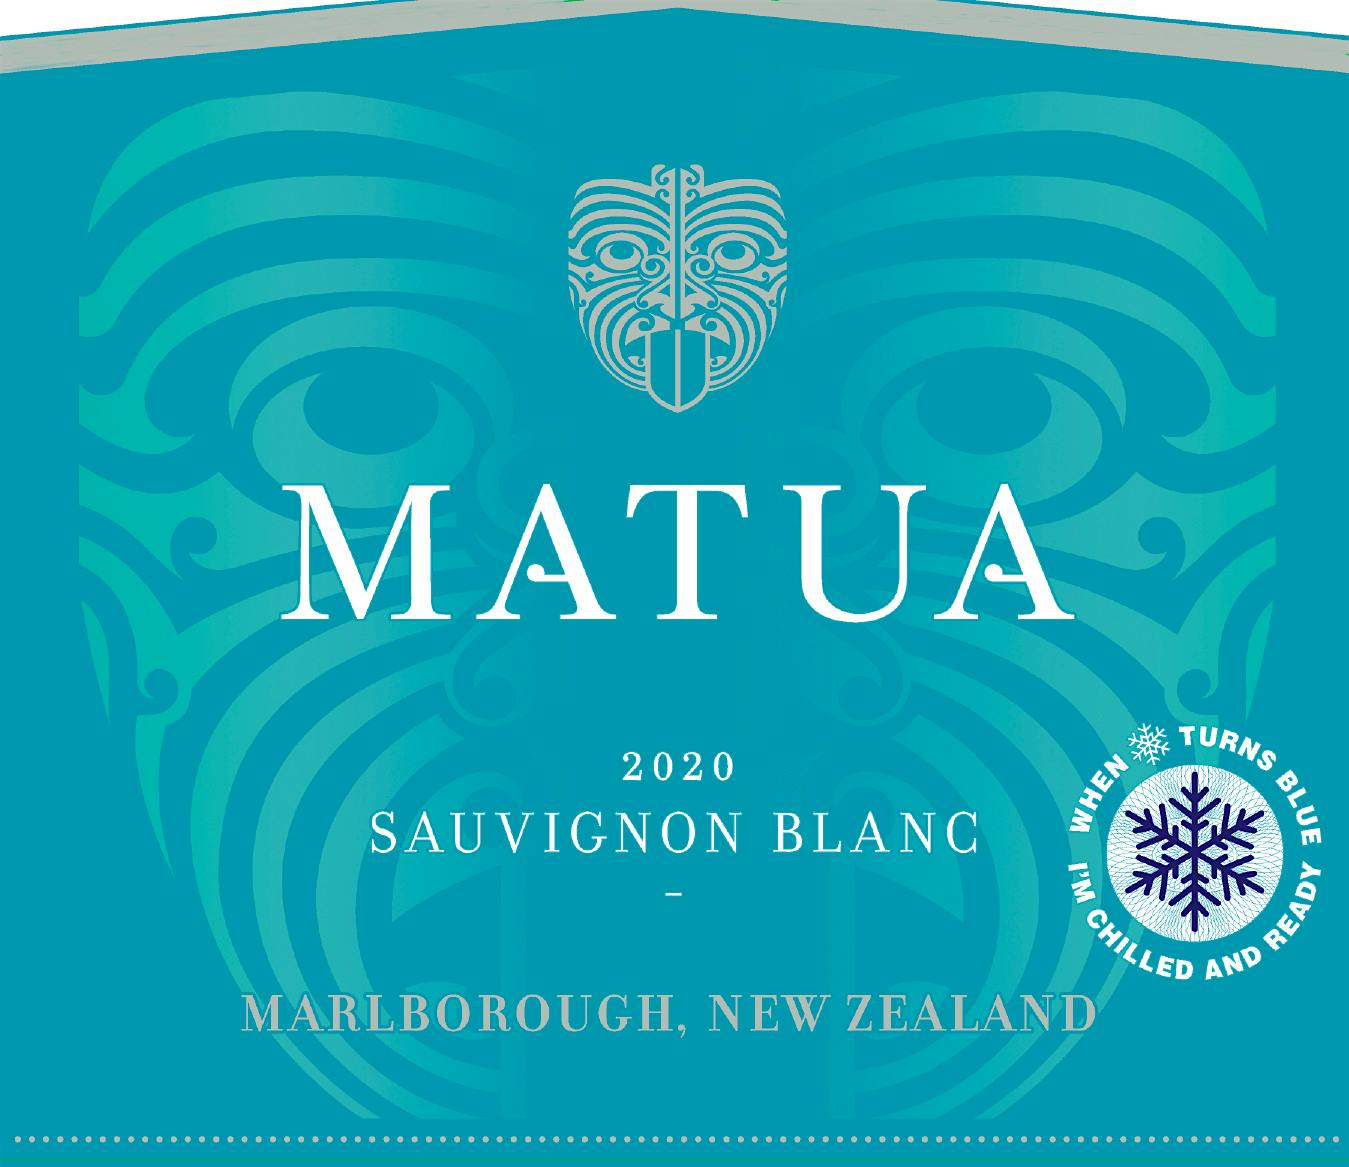 Label for Matua